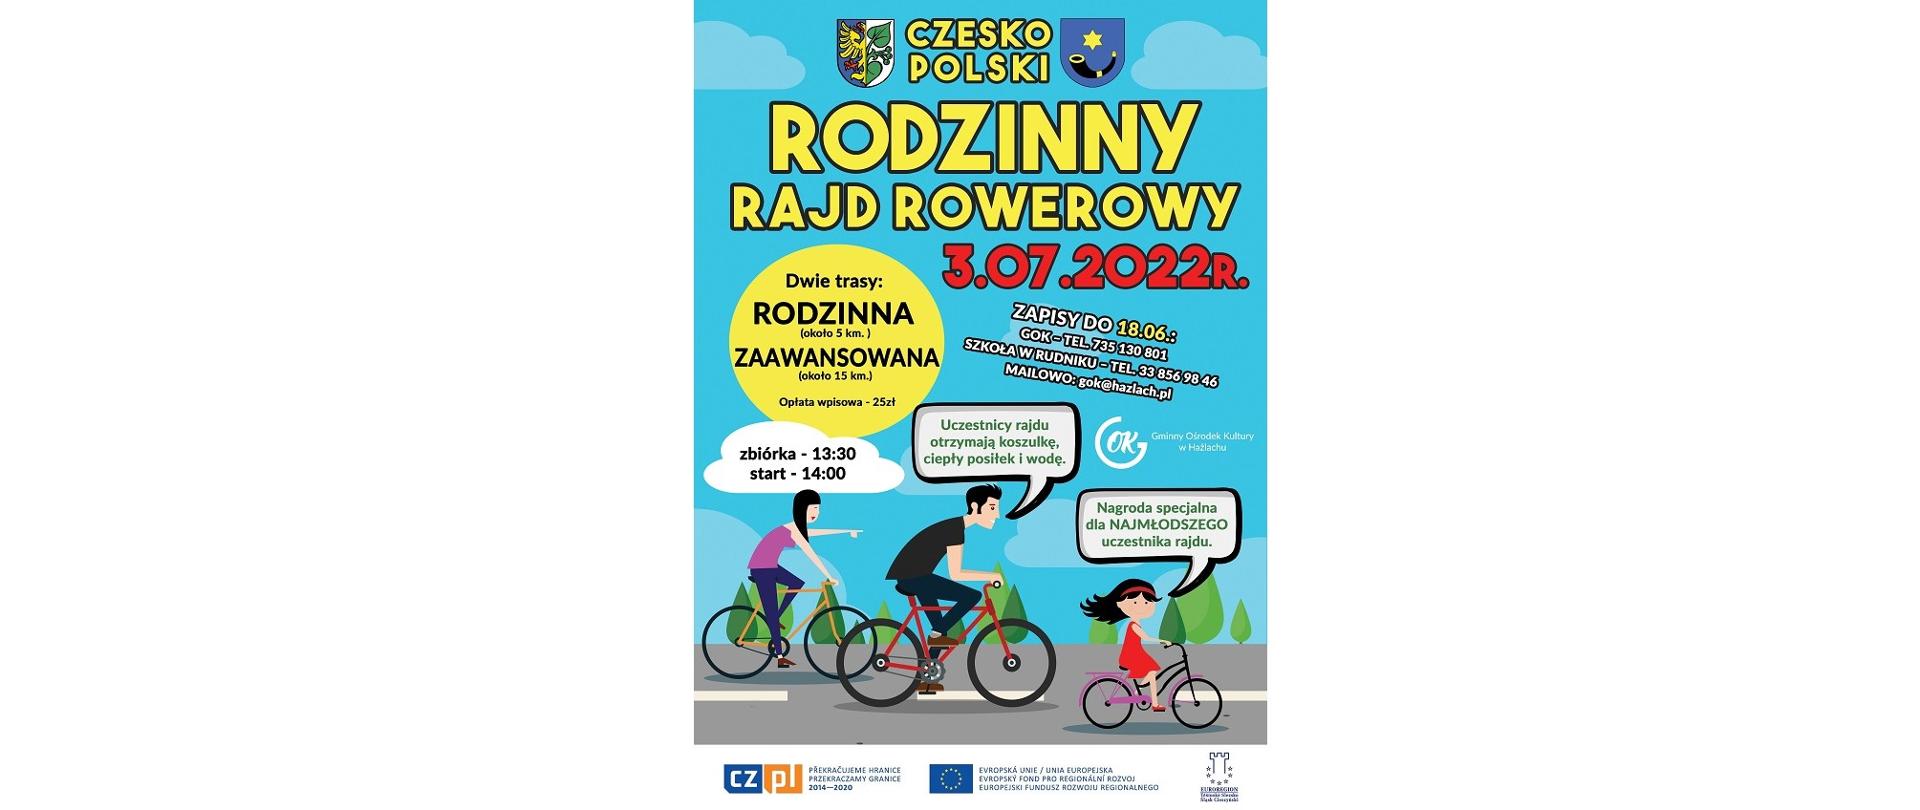 Plakat Czesko-Polskiego Rodzinnego Rajdu Rowerowego. Dwie trasy: rodzinna (około 5 km), zaawansowana (około 15 km). Zapisy do 18 czerwca. Nagroda specjalna dla najmłodszego uczestnika rajdu.